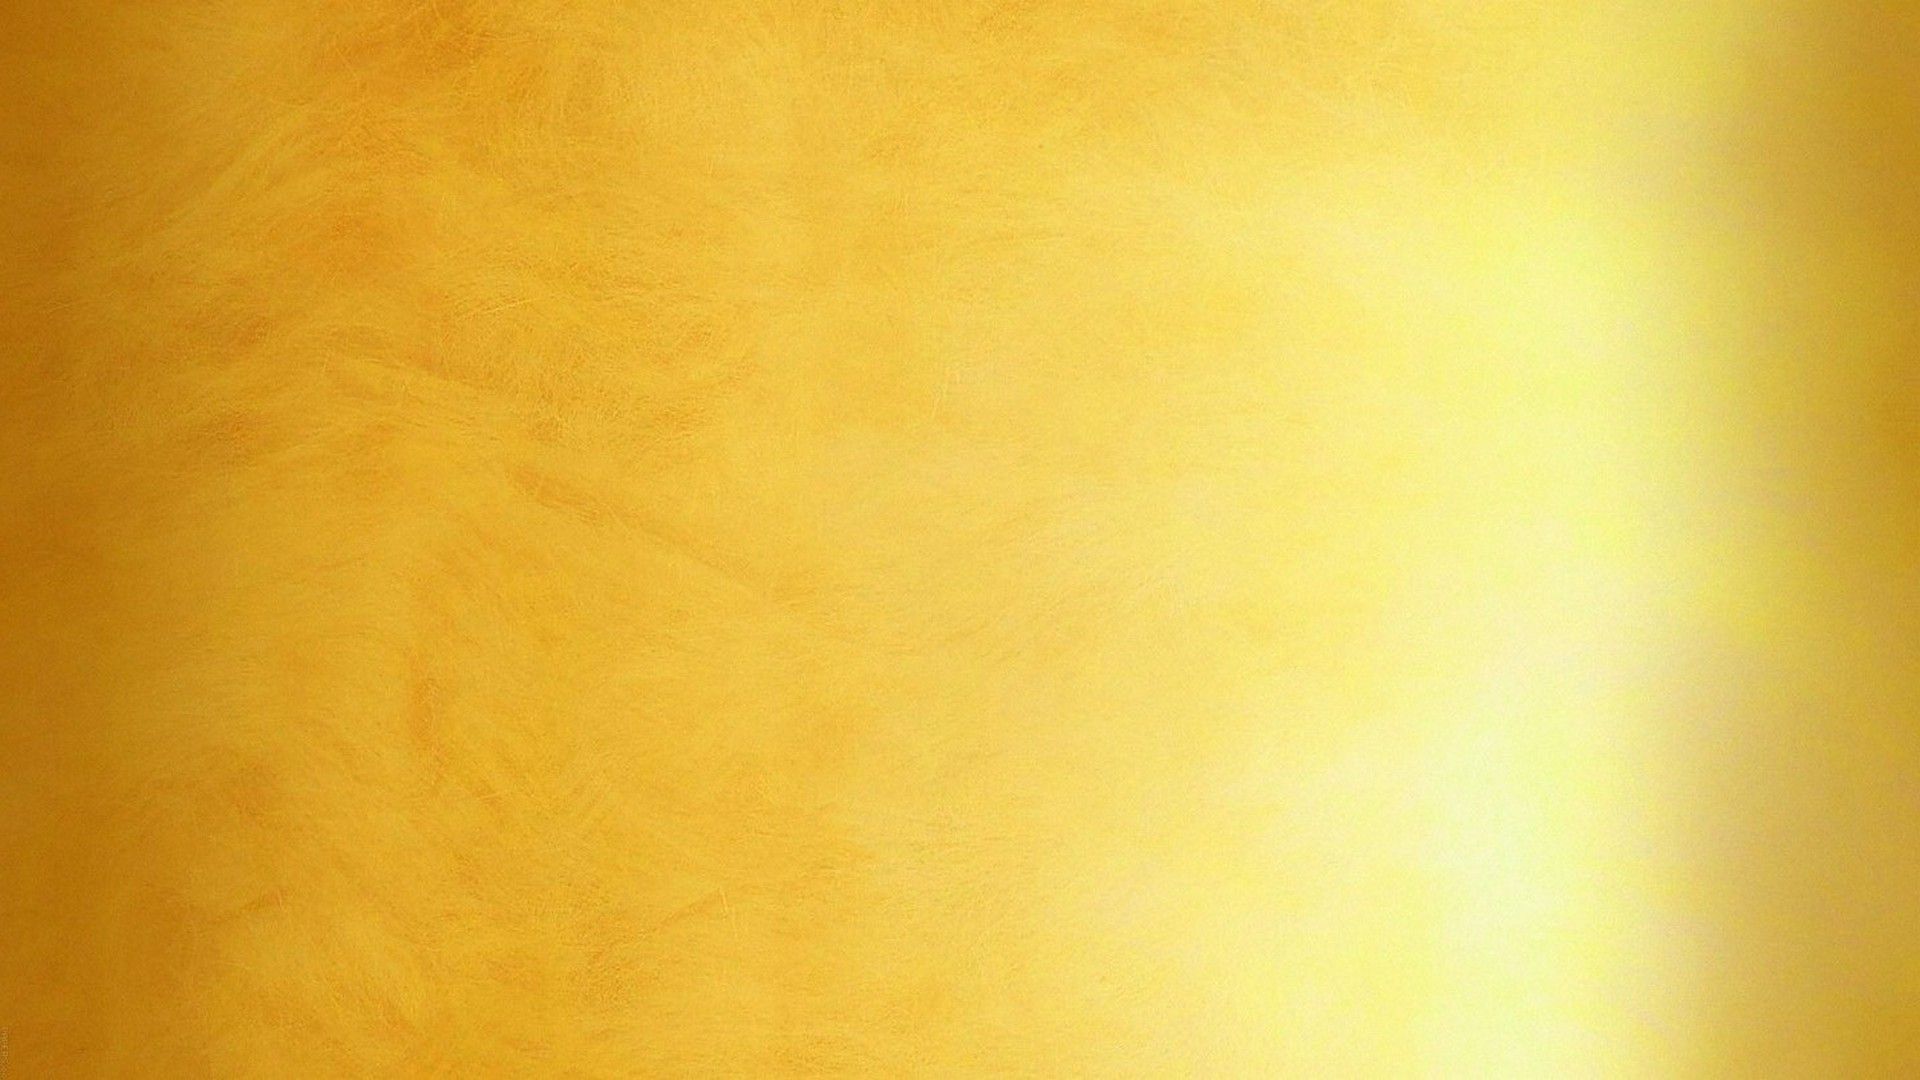 einfache goldene tapete,gelb,orange,hintergrund